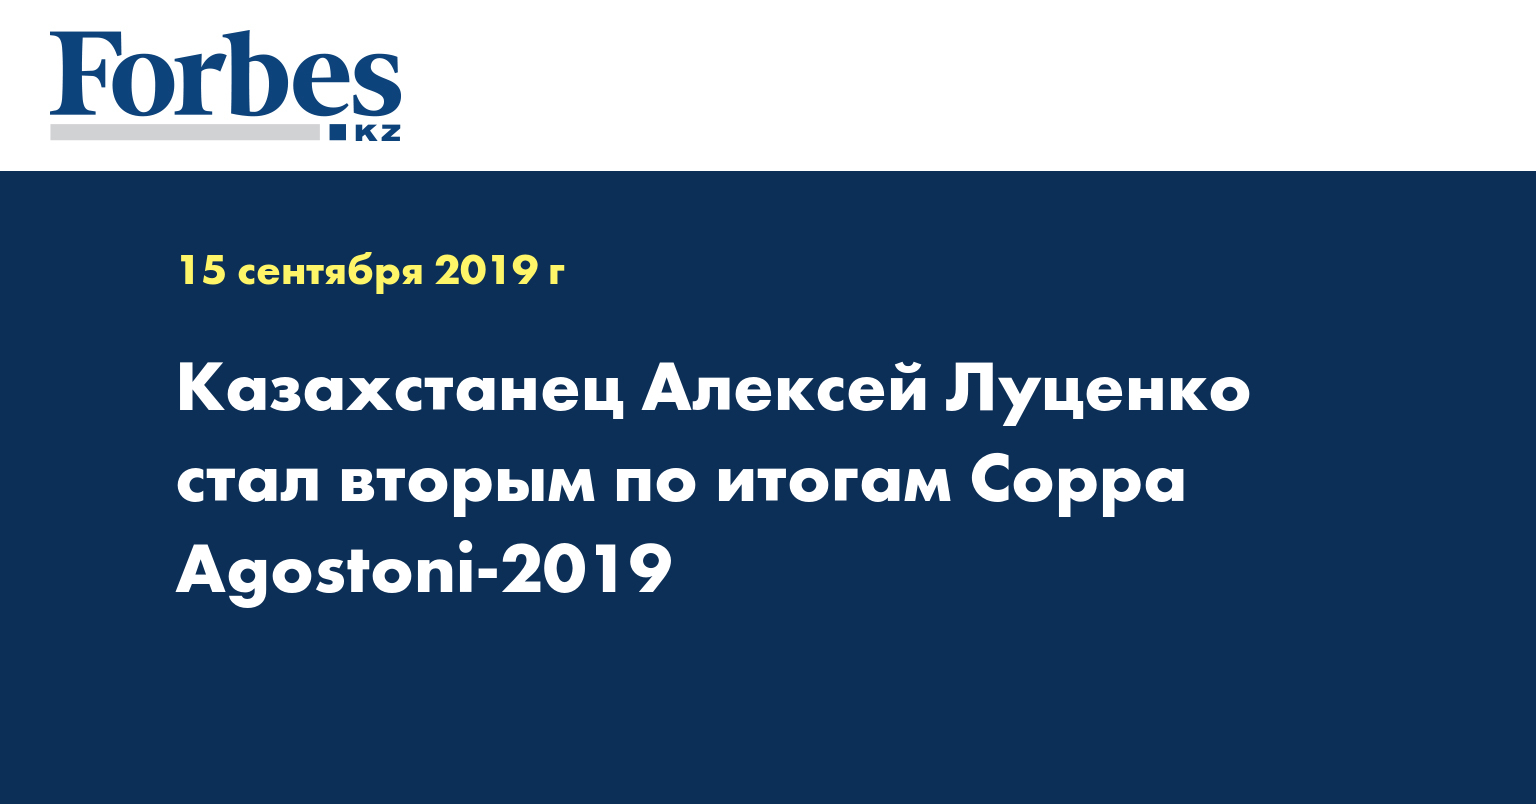 Казахстанец Алексей Луценко стал вторым по итогам Coppa Agostoni-2019  